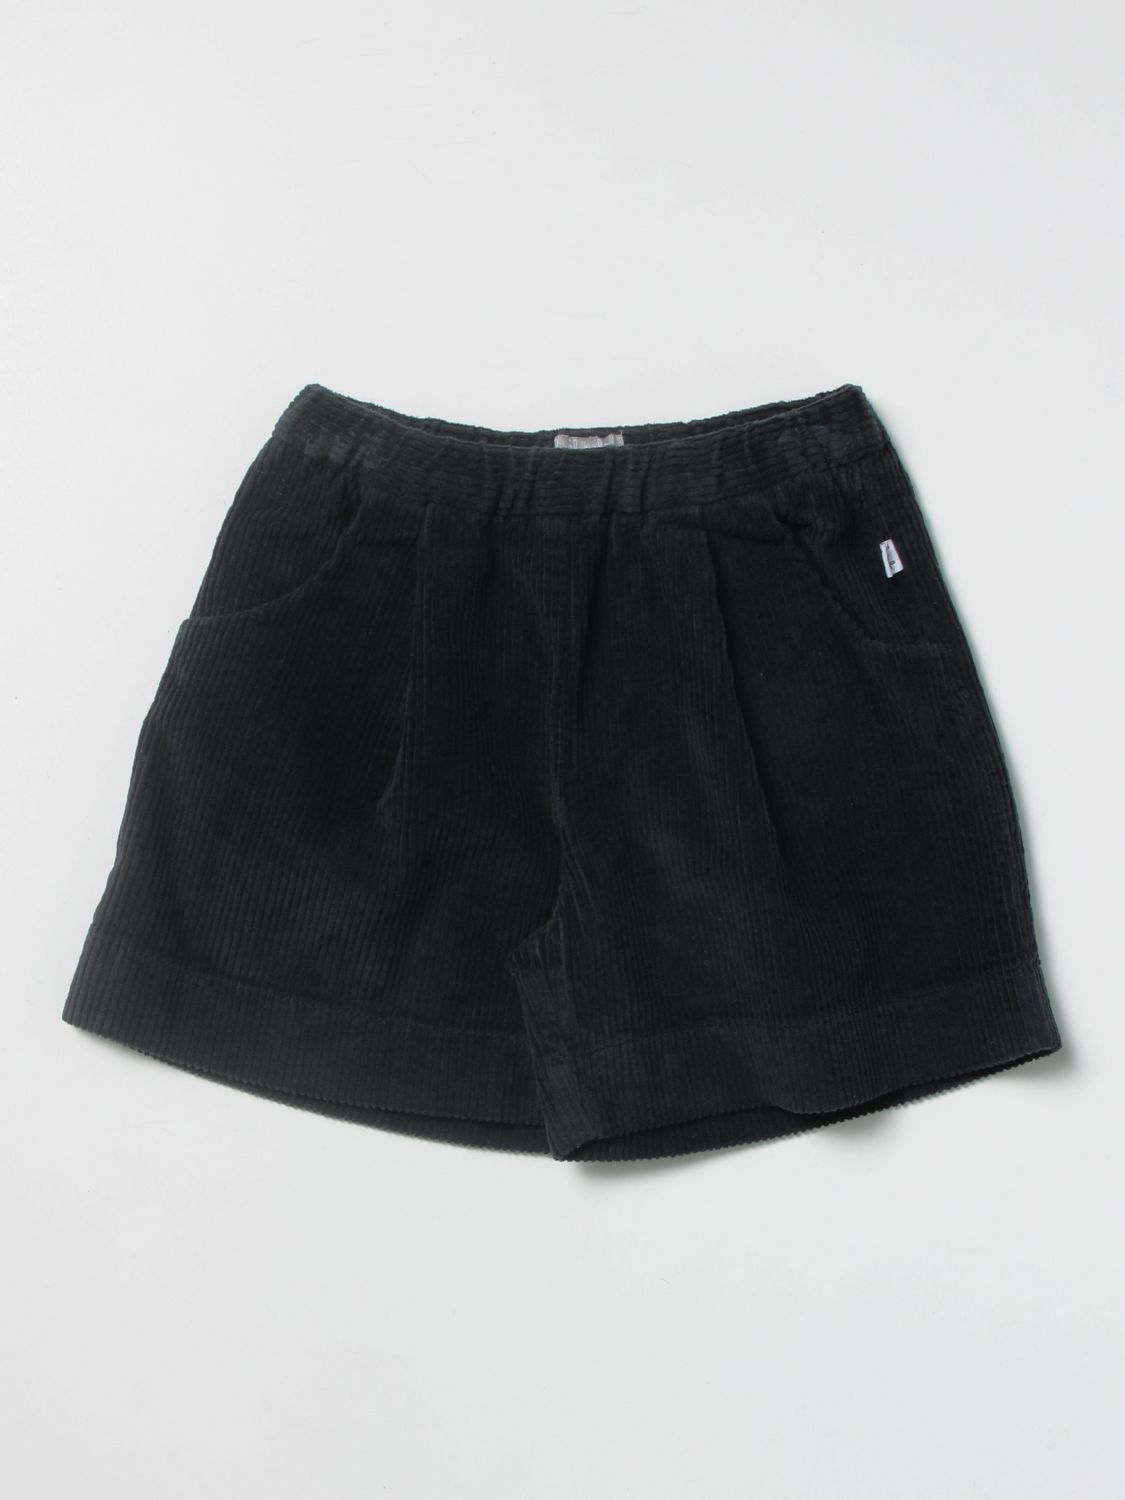 Pantalones cortos Il Gufo: Pantalones cortos Il Gufo para niña azul oscuro 1